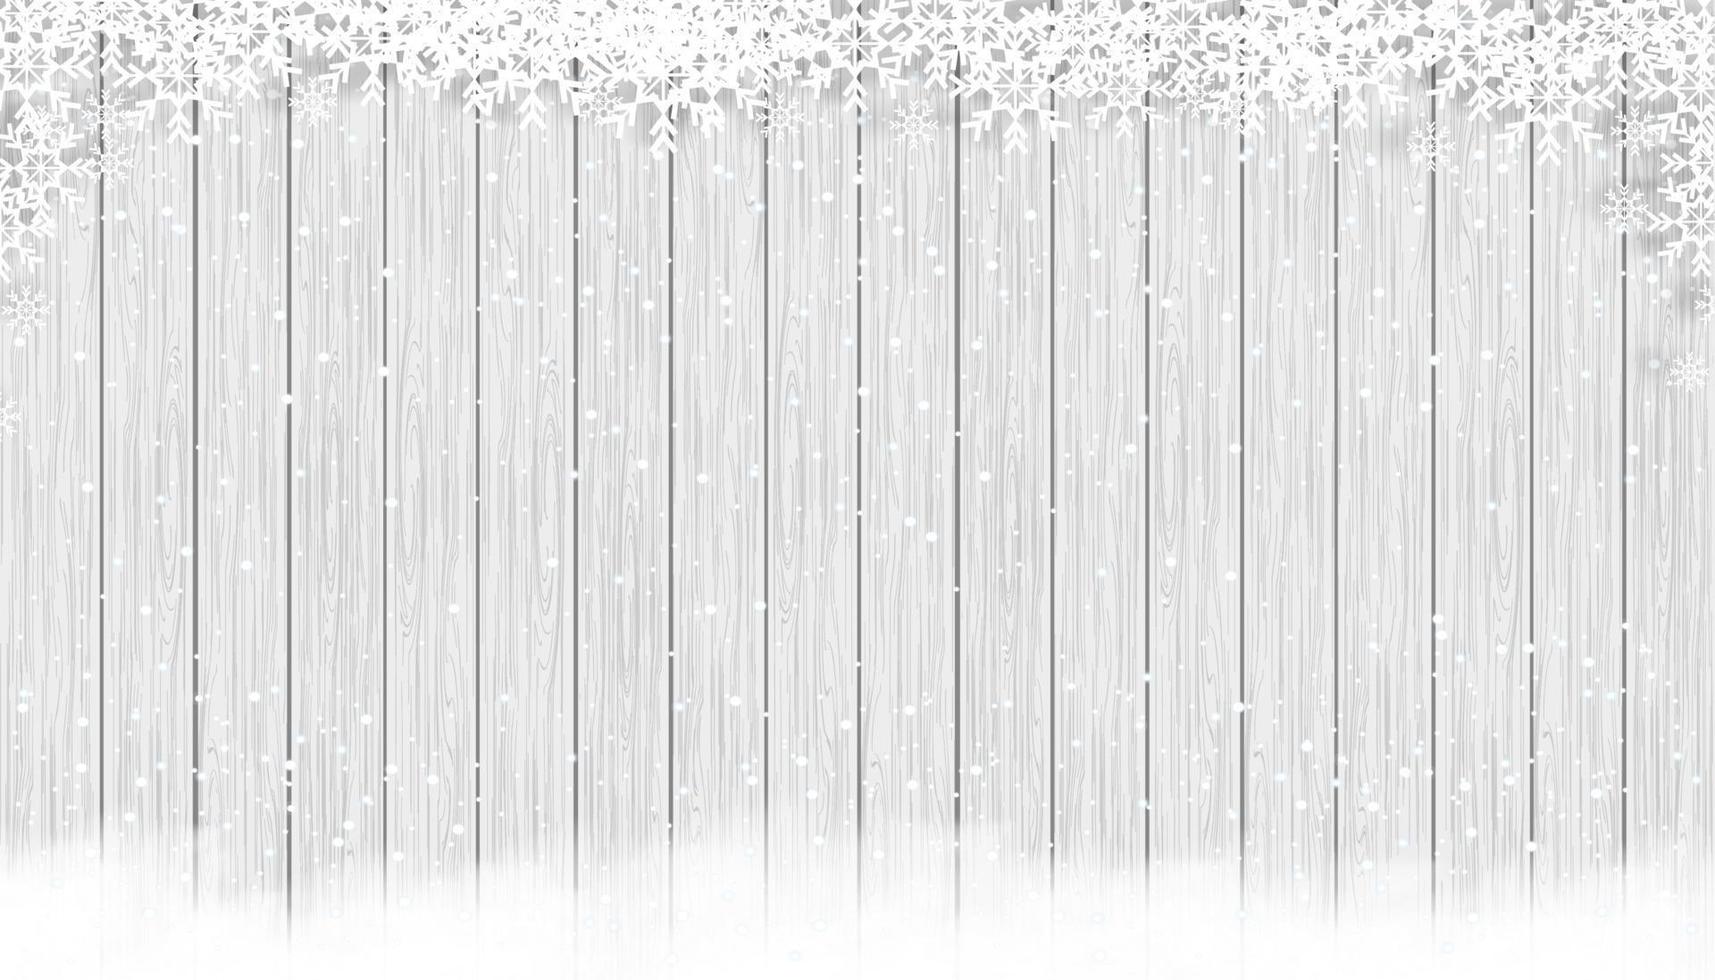 fondo de navidad con copos de nieve en textura de madera, escena de invierno vectorial con nieve en textura de panel de madera blanca y gris, telón de fondo de banner de pantalla 3d para promoción de año nuevo o navidad vector